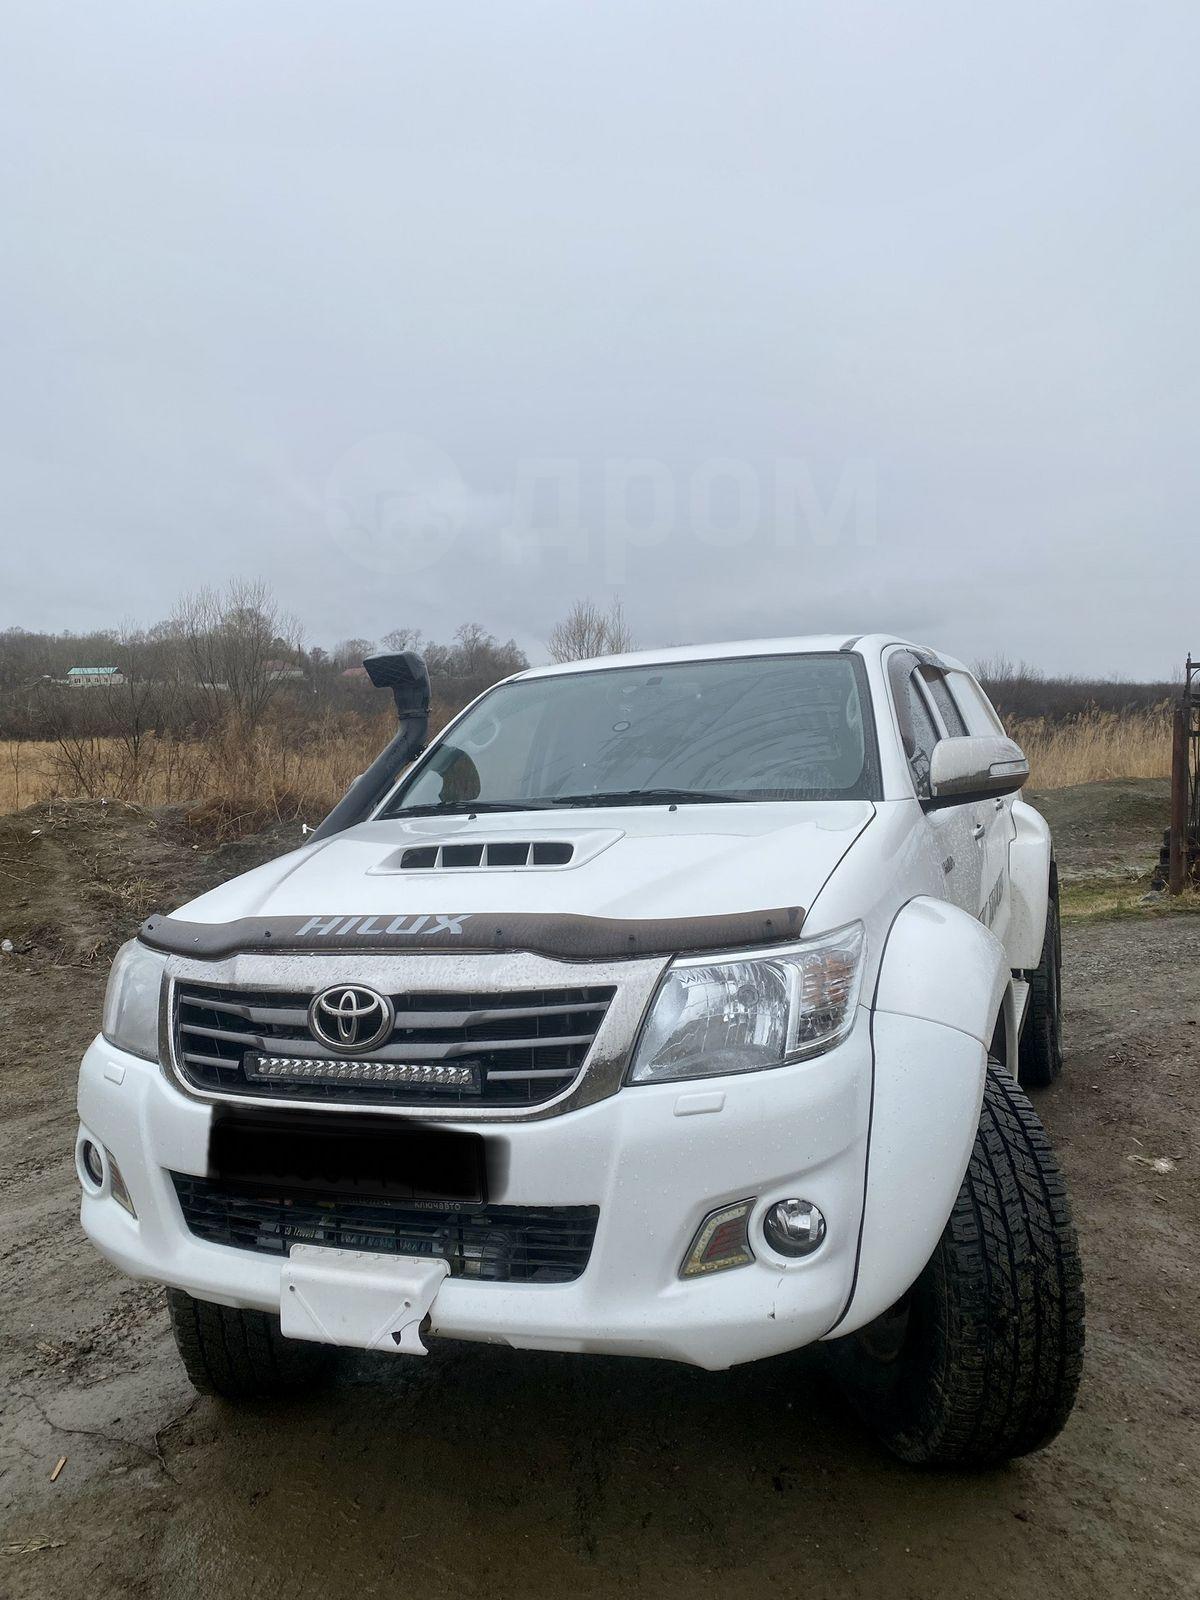 Продажа авто Toyota Hilux 2013 в Хабаровске, За дополнительную плату  возможна продажа Кемпинга, б/у, дизель, белый, полный привод, с пробегом  108 тысяч км, левый руль